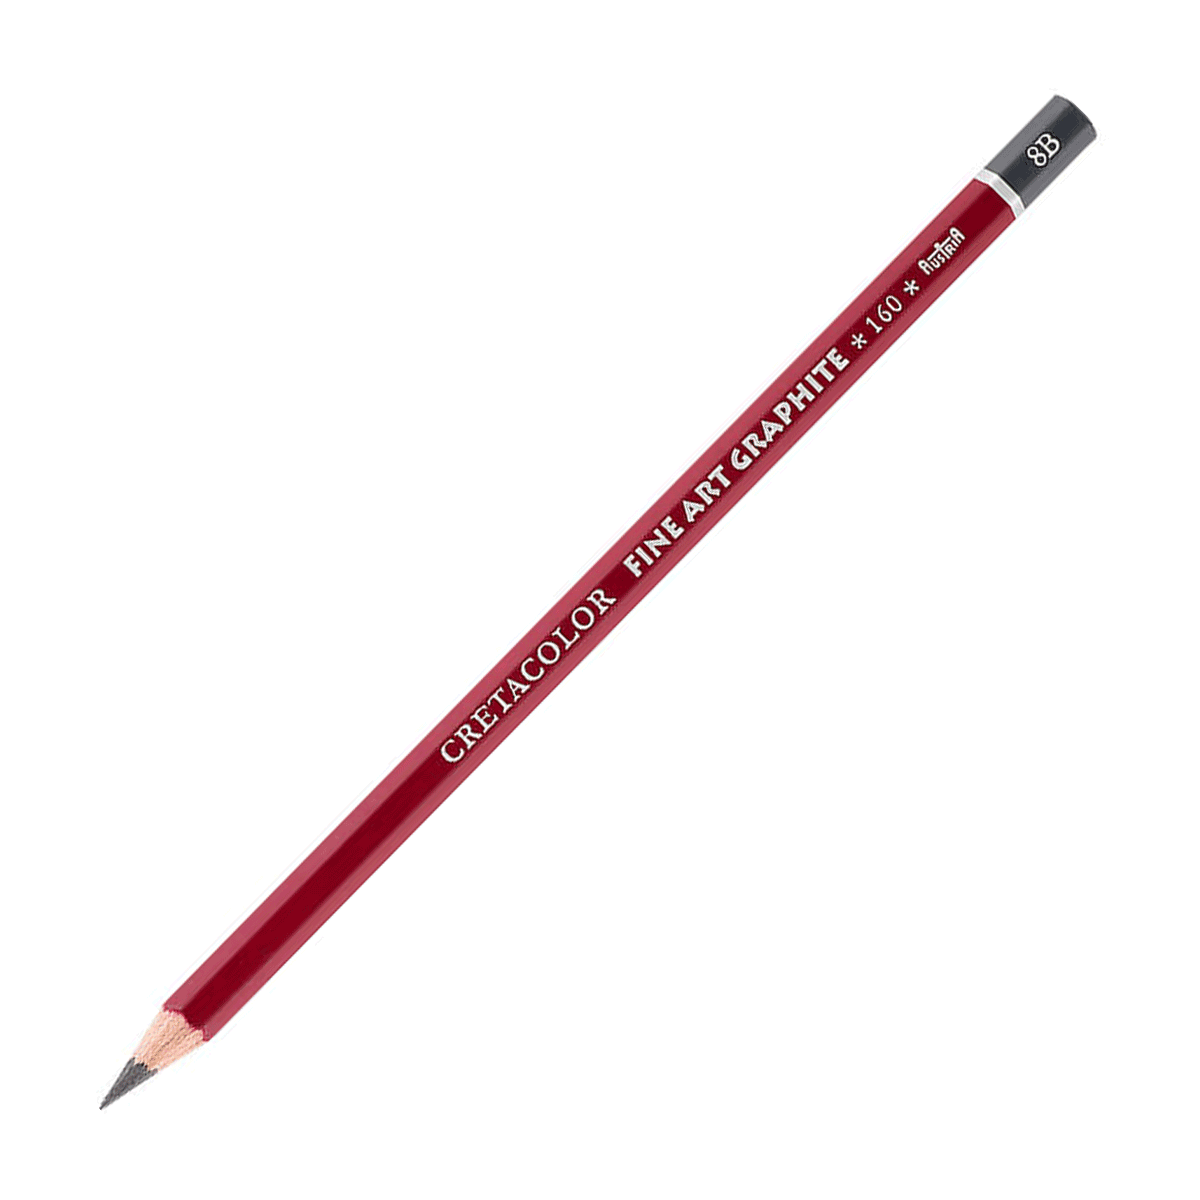 Cretacolor Fine Art Red Graphite Pencil - 8B